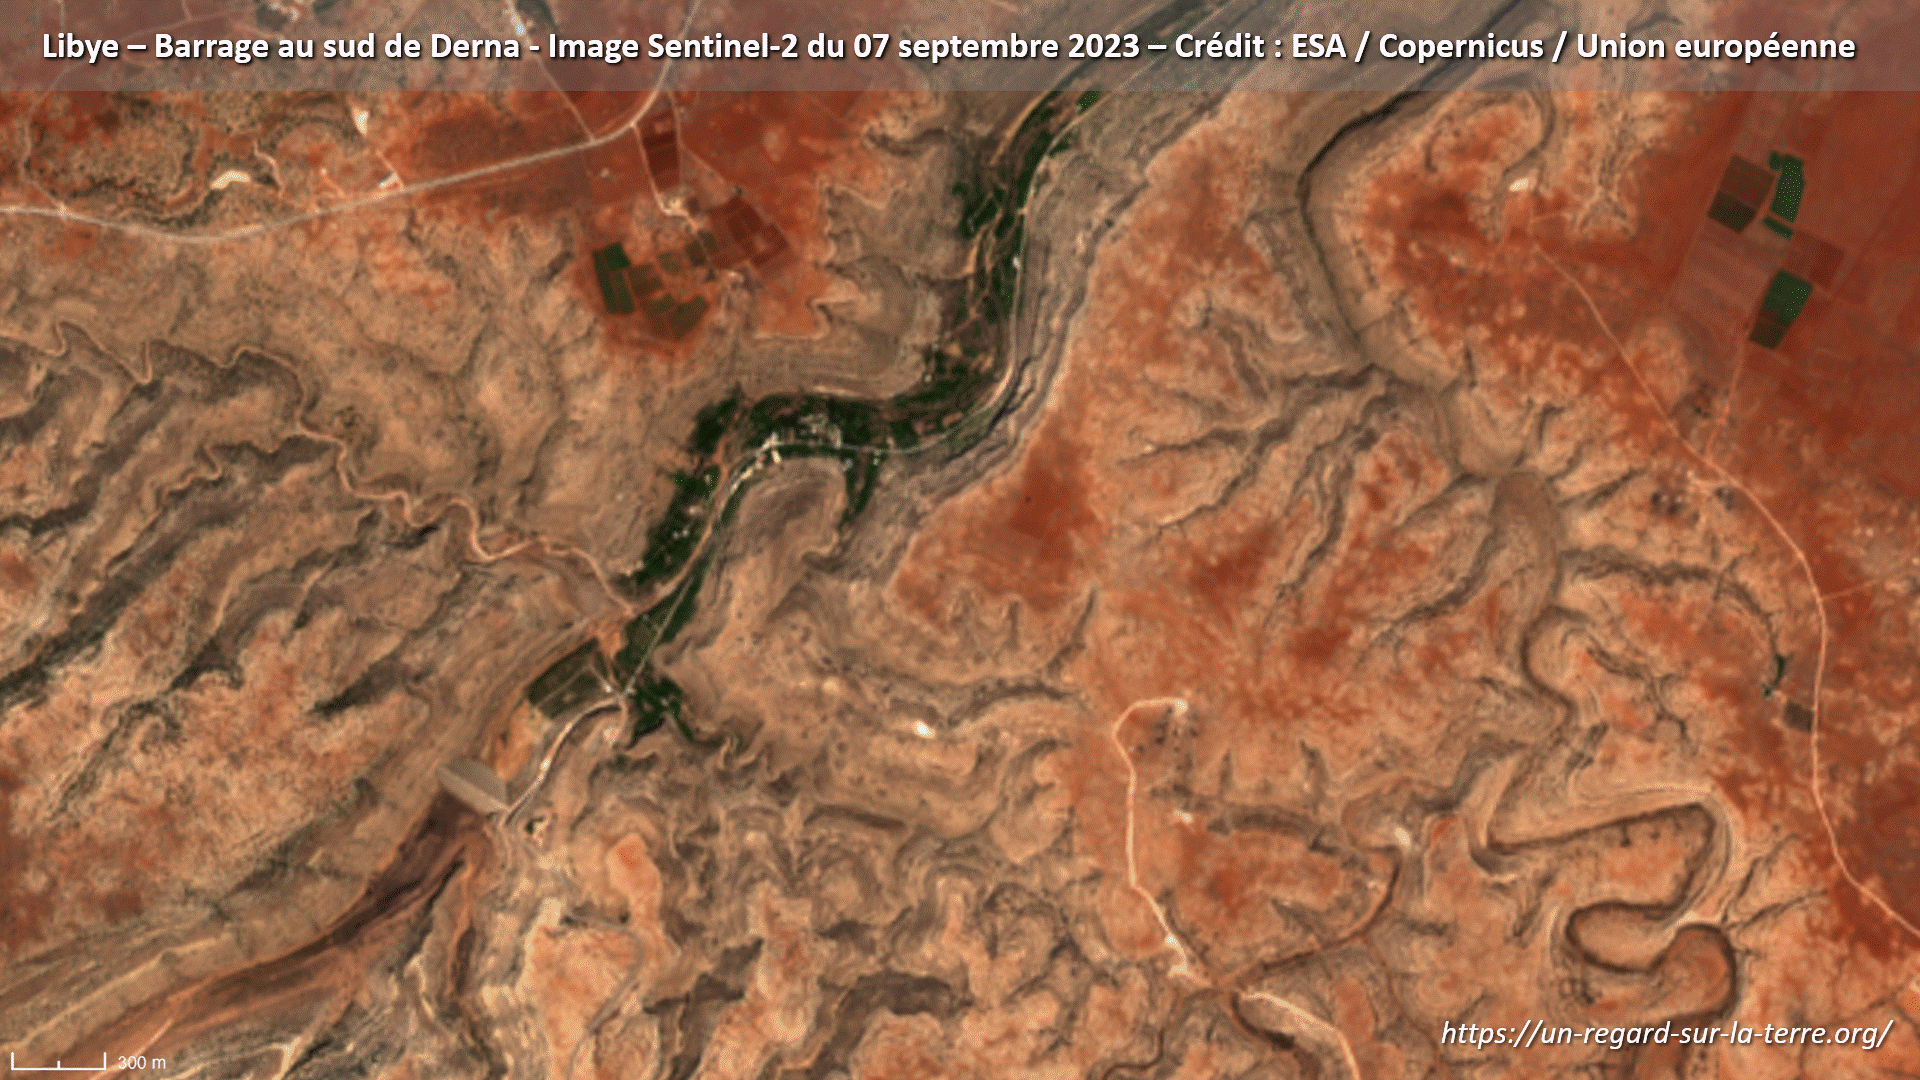 Libye - Derna - Darnah - inondations - floods - satellite - Sentinel-2 - Copernicus - Septembre 2023 - rupture barrage - Dam - dégâts - damages - Oued Derna - Wali Derna